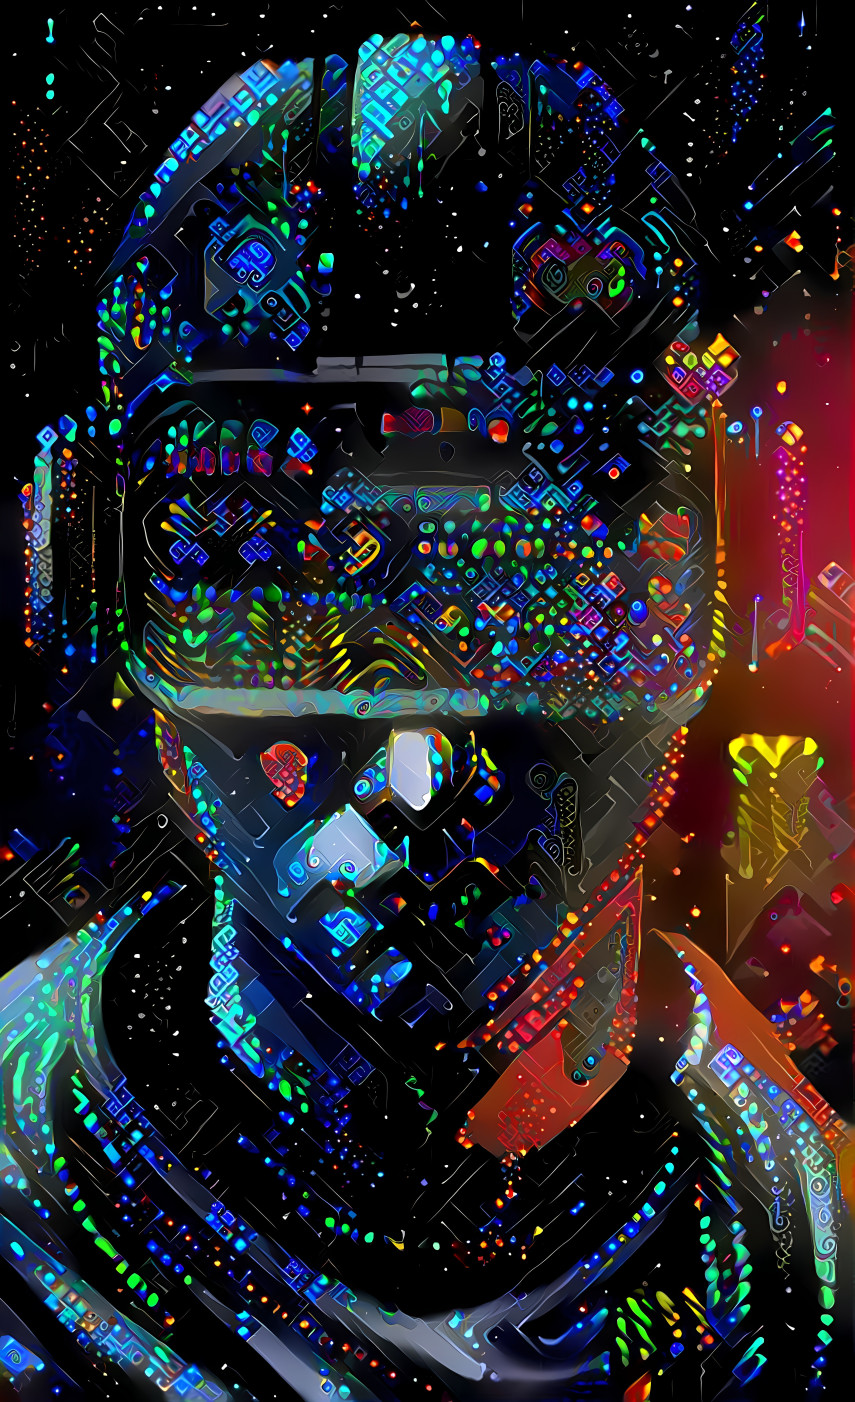 Cyberboy VR by Distortedbrain